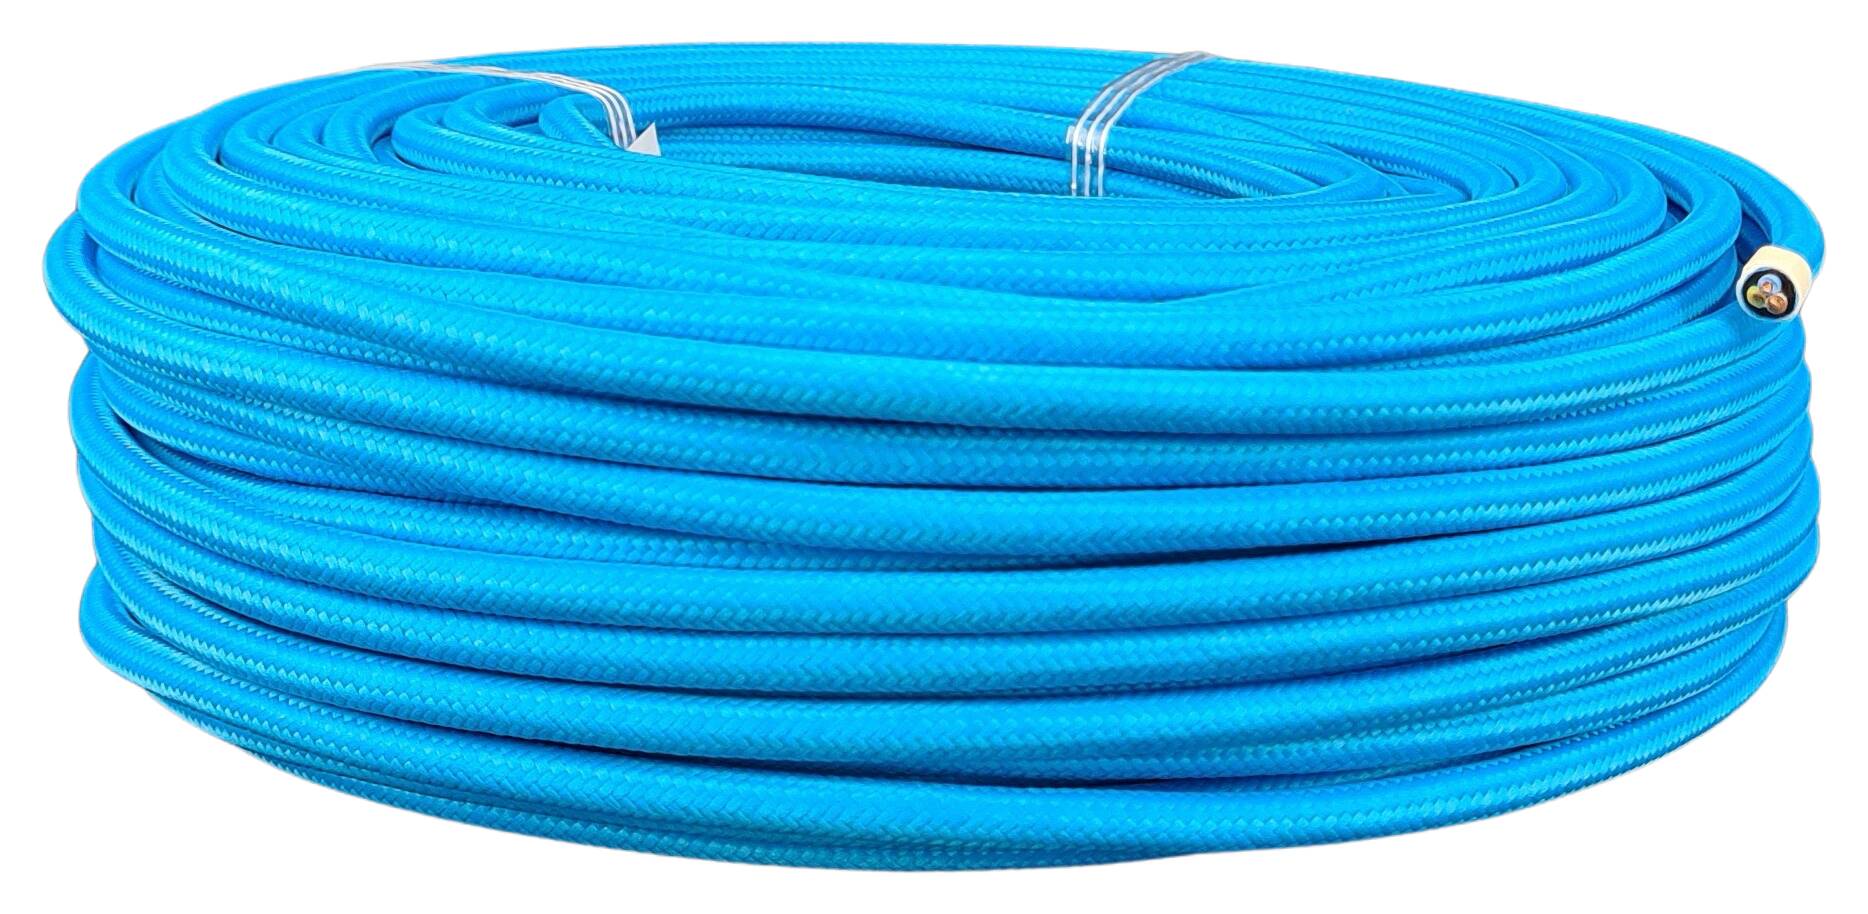 Kabel 3G 0,75 H03VV-F textilummantelt RAL 5015 blau